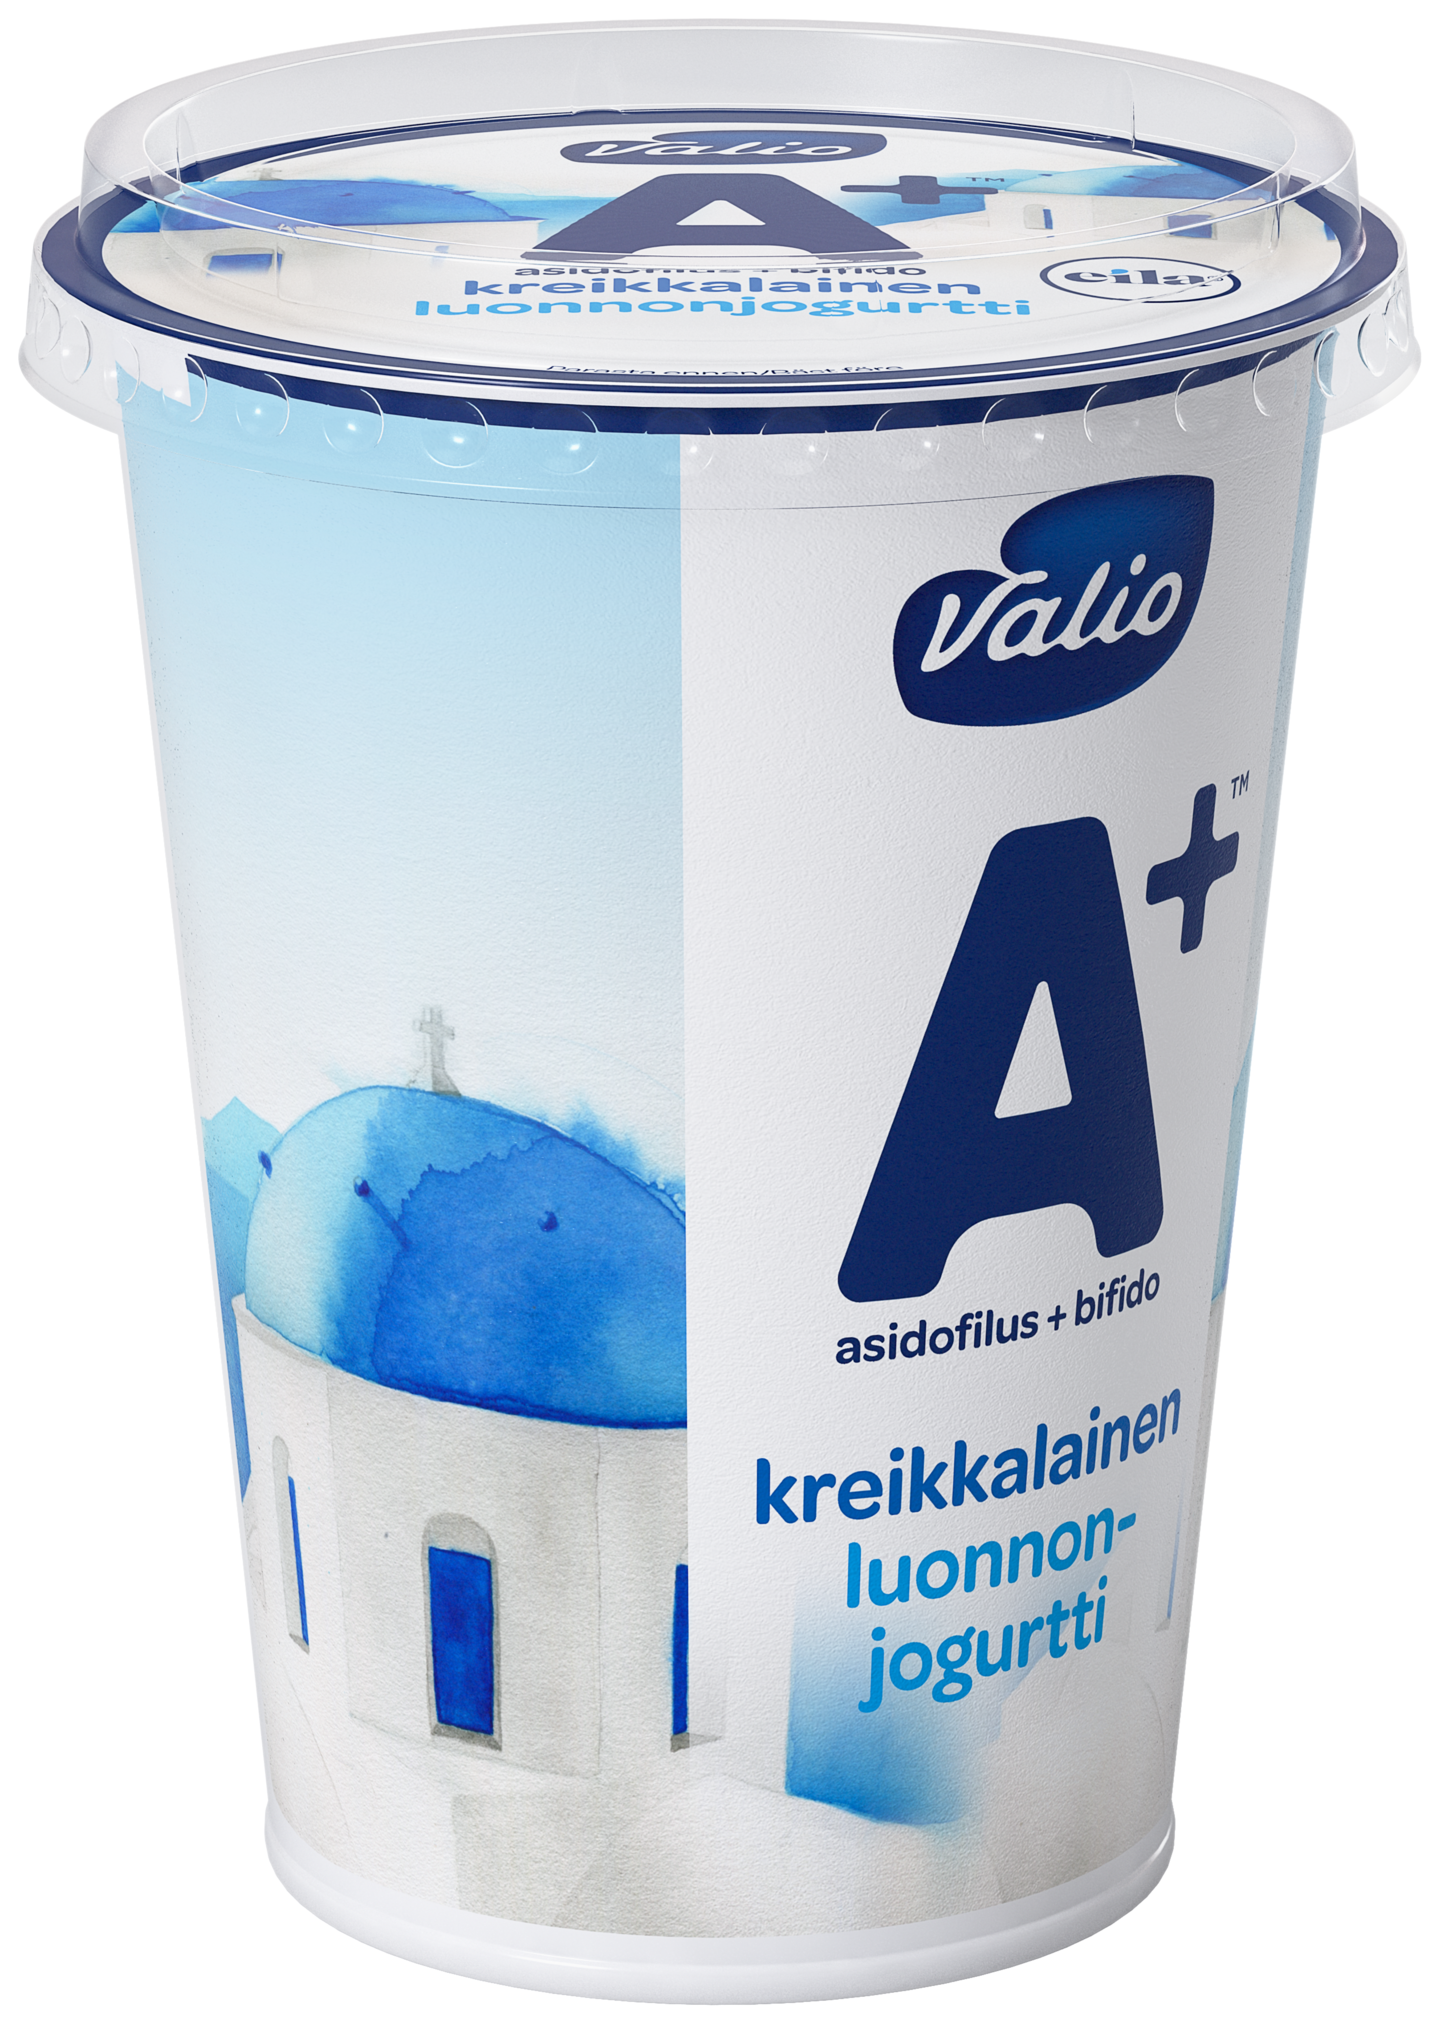 Valio A+ kreikkalainen luonnonjogurtti 400g laktoositon | K-Ruoka  Verkkokauppa